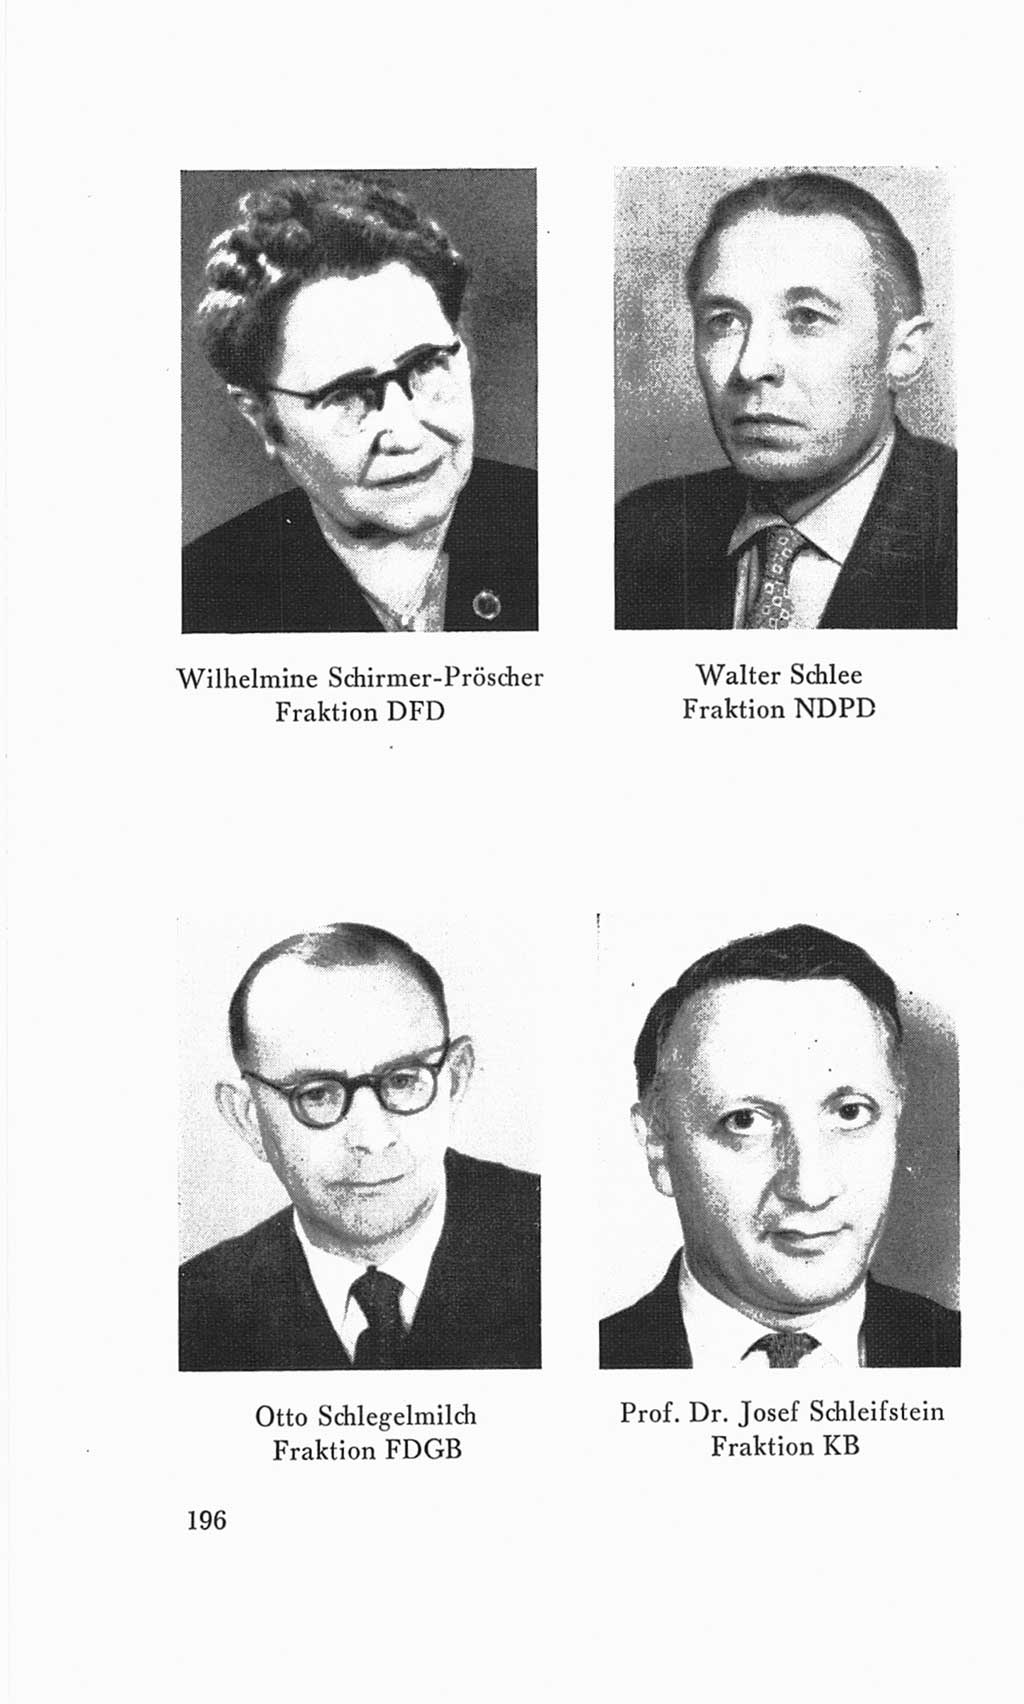 Handbuch der Volkskammer (VK) der Deutschen Demokratischen Republik (DDR), 3. Wahlperiode 1958-1963, Seite 196 (Hdb. VK. DDR 3. WP. 1958-1963, S. 196)